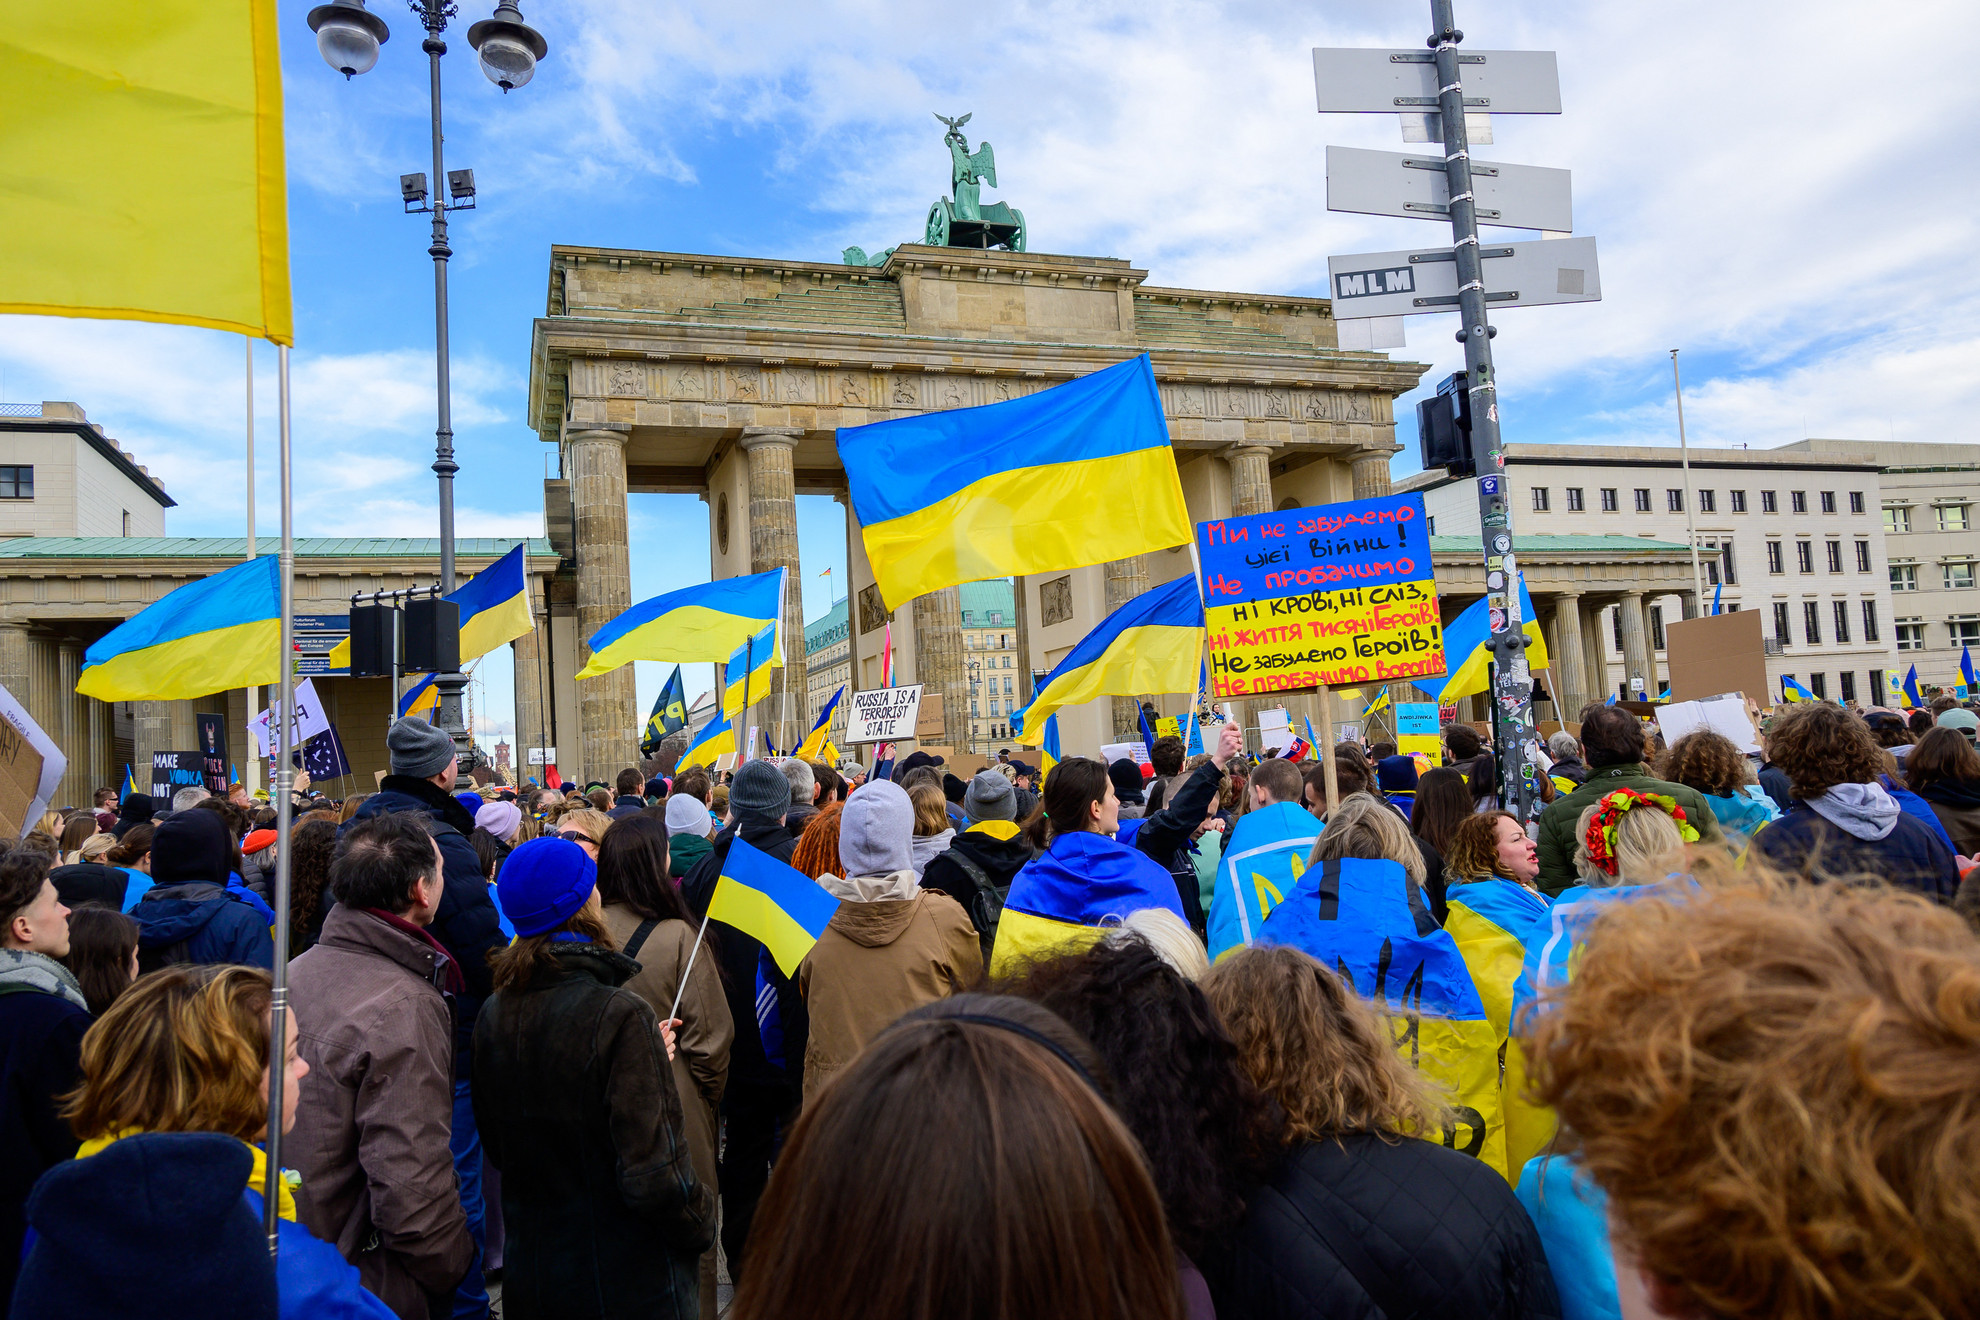 Németország szolidaritást vállalt Ukrajnával a háború kitörésekor, de most megtörténhet egy uniós döntés alapján, hogy a katonakorú nőket is visszatoloncolják Ukrajnába